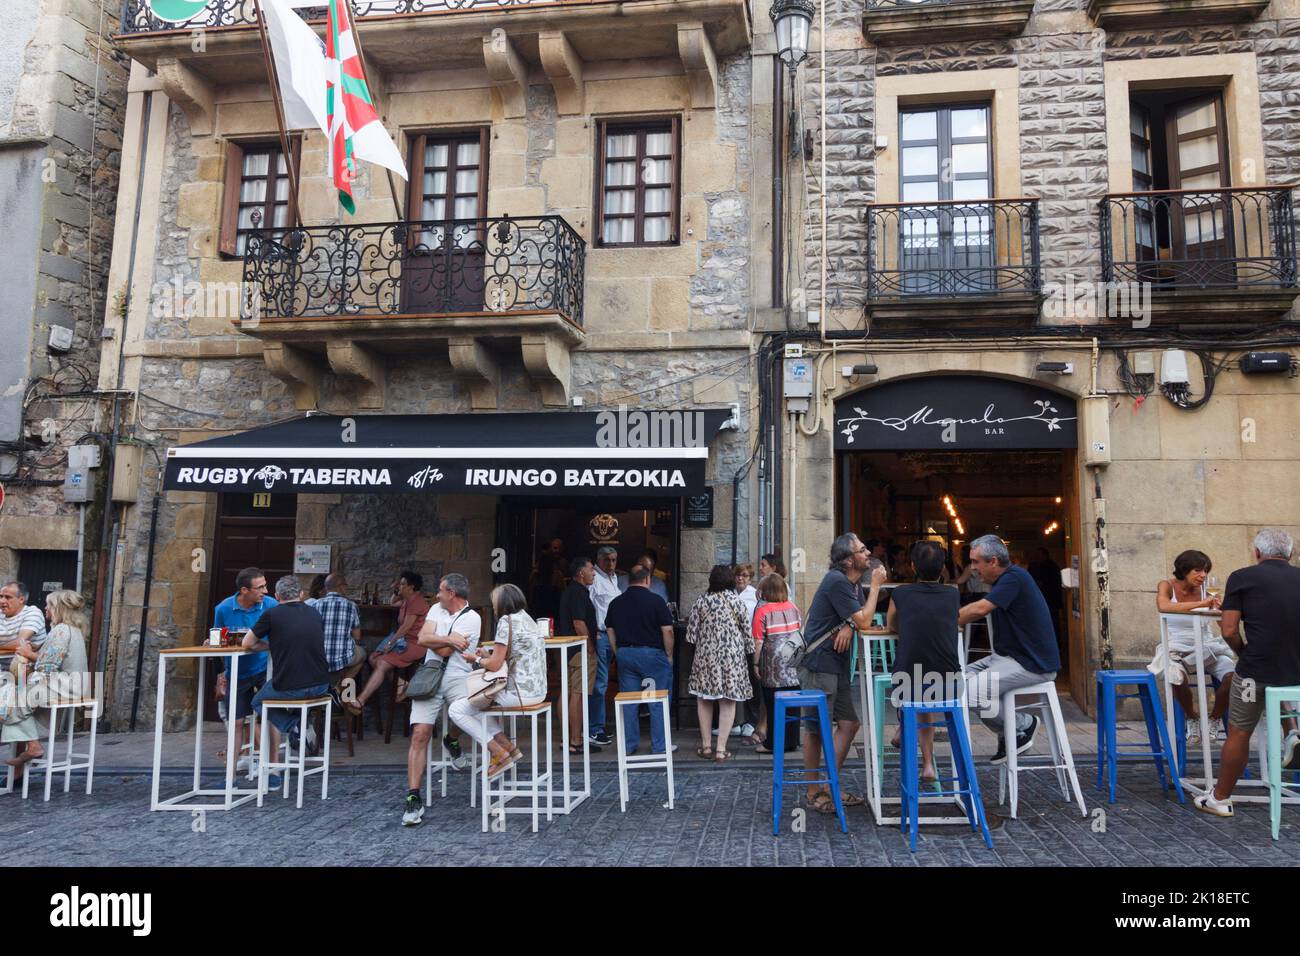 Irun, Guipuzcoa, Baskenland, Spanien : die Menschen versammeln sich in den vielen Bars entlang der Calle Mayor Straße. Stockfoto